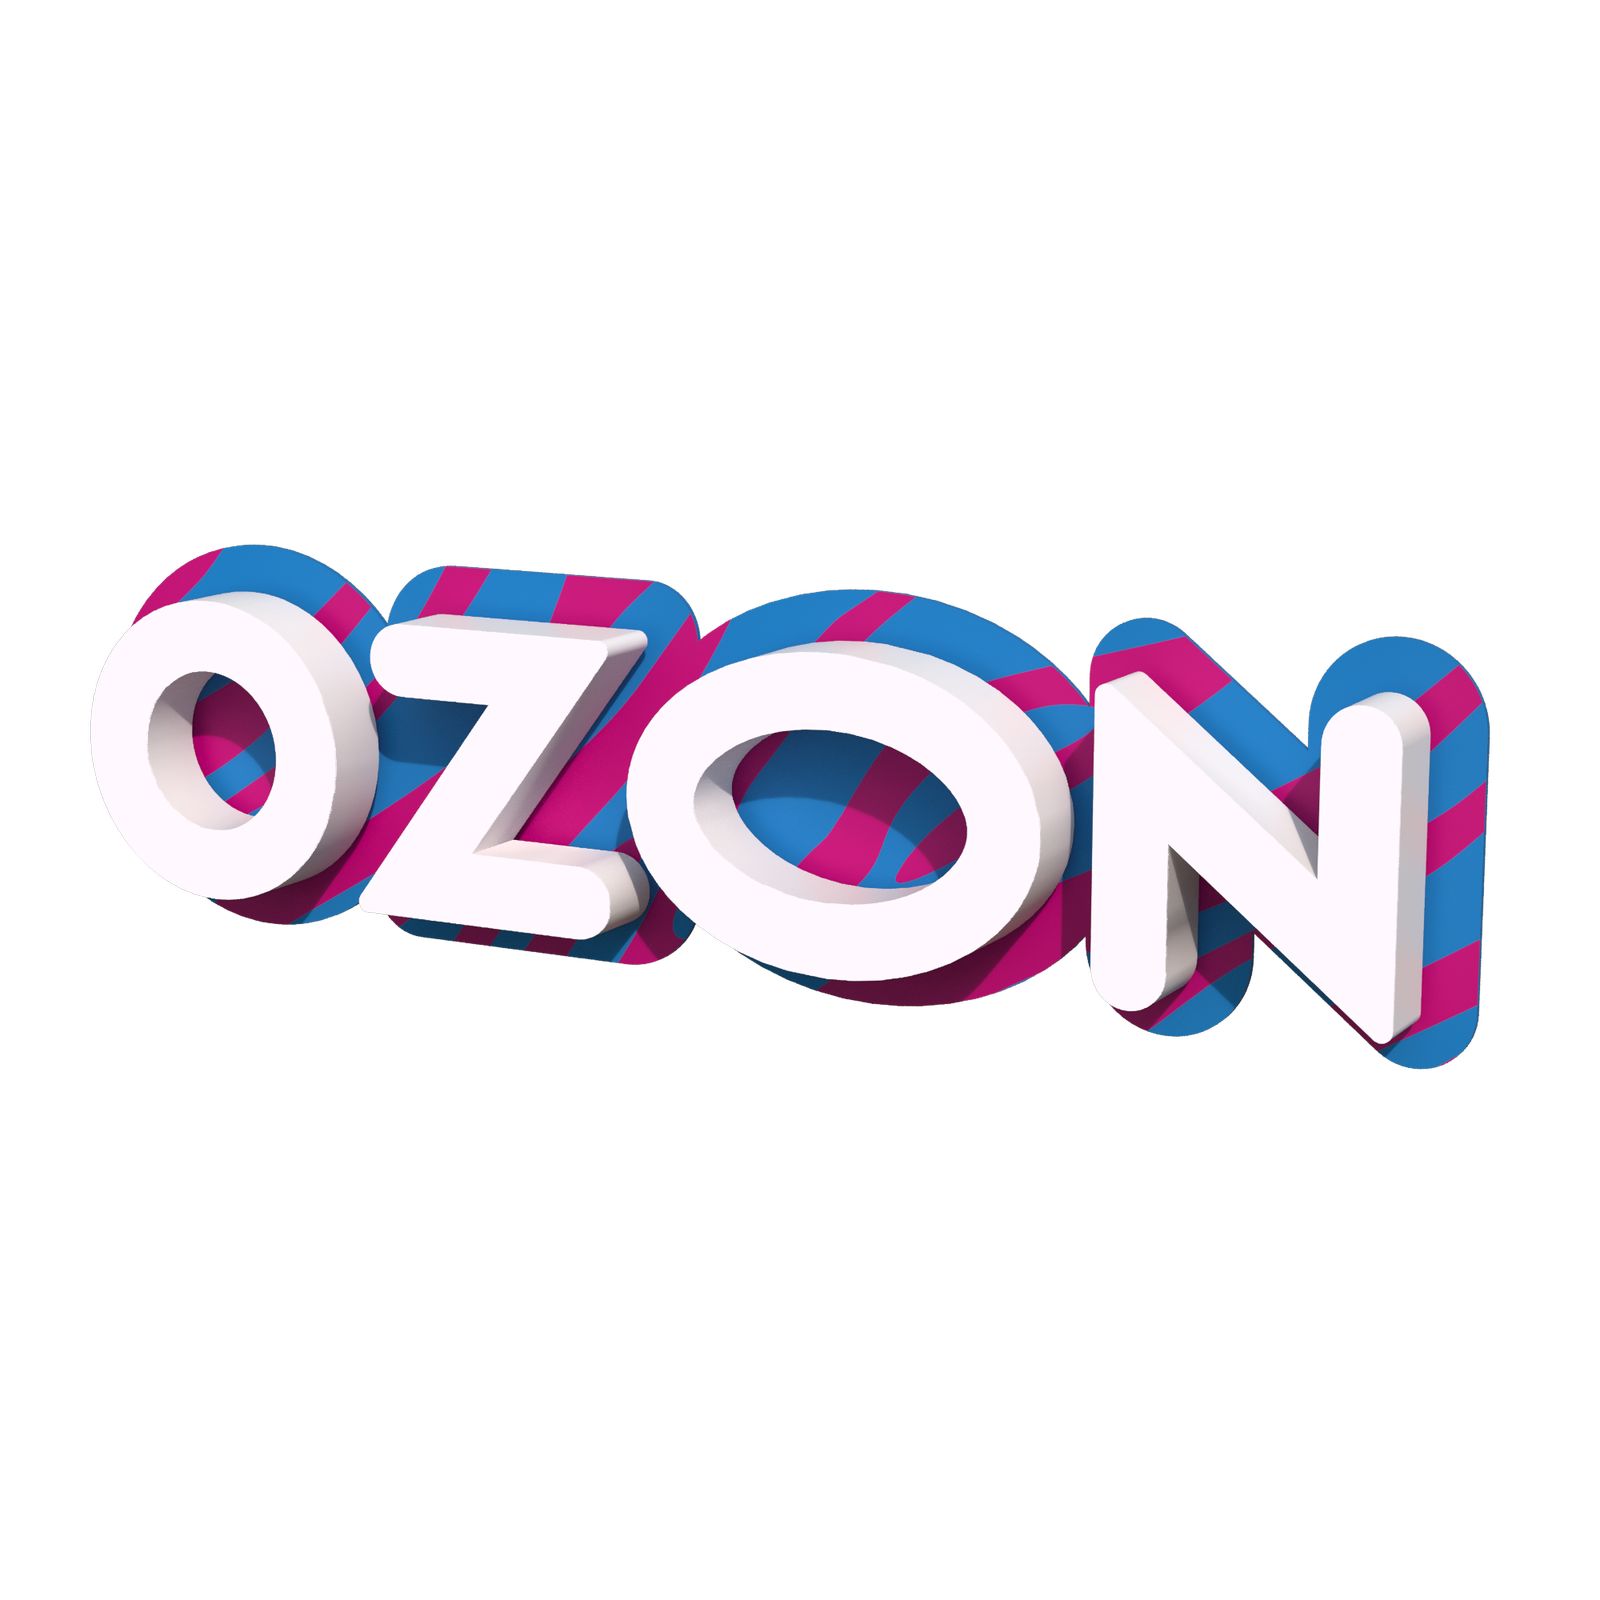 Озон вывески новый бренд. Вывеска Озон Зебра 2100. Озон лого Зебра.